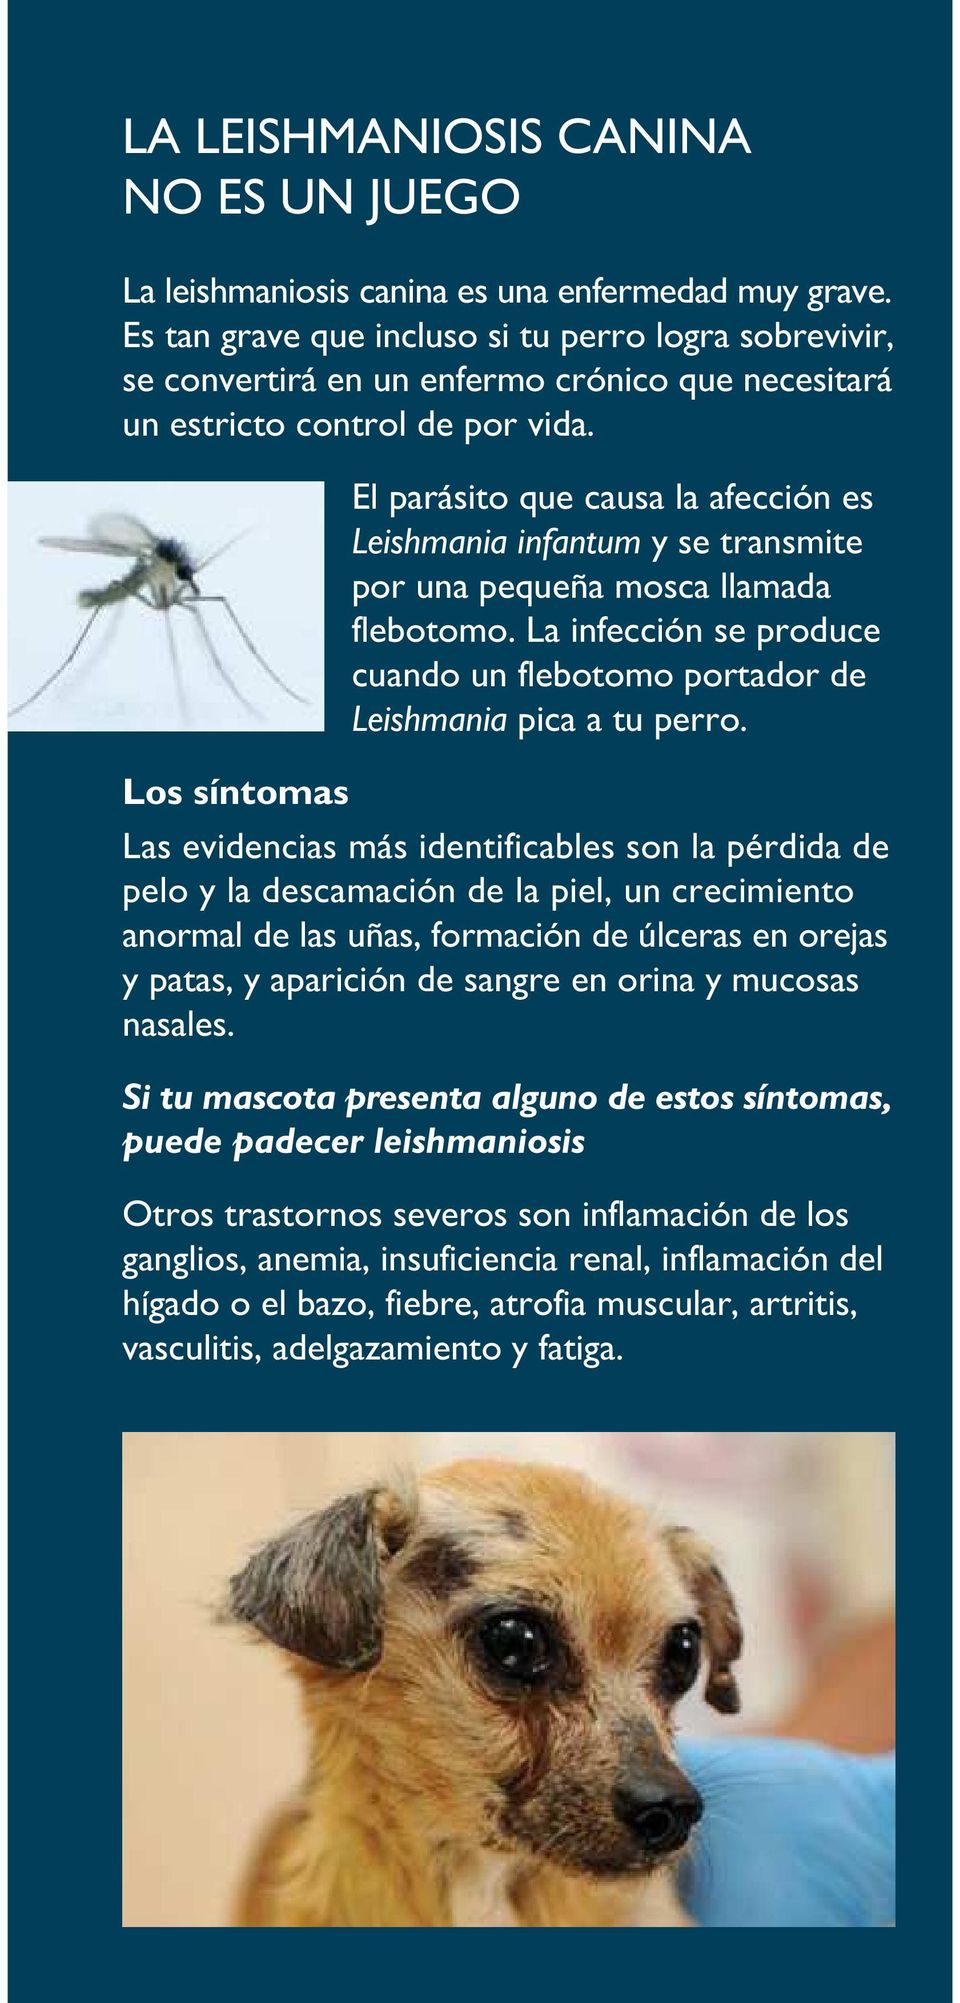 Los síntomas El parásito que causa la afección es Leishmania infantum y se transmite por una pequeña mosca llamada flebotomo.